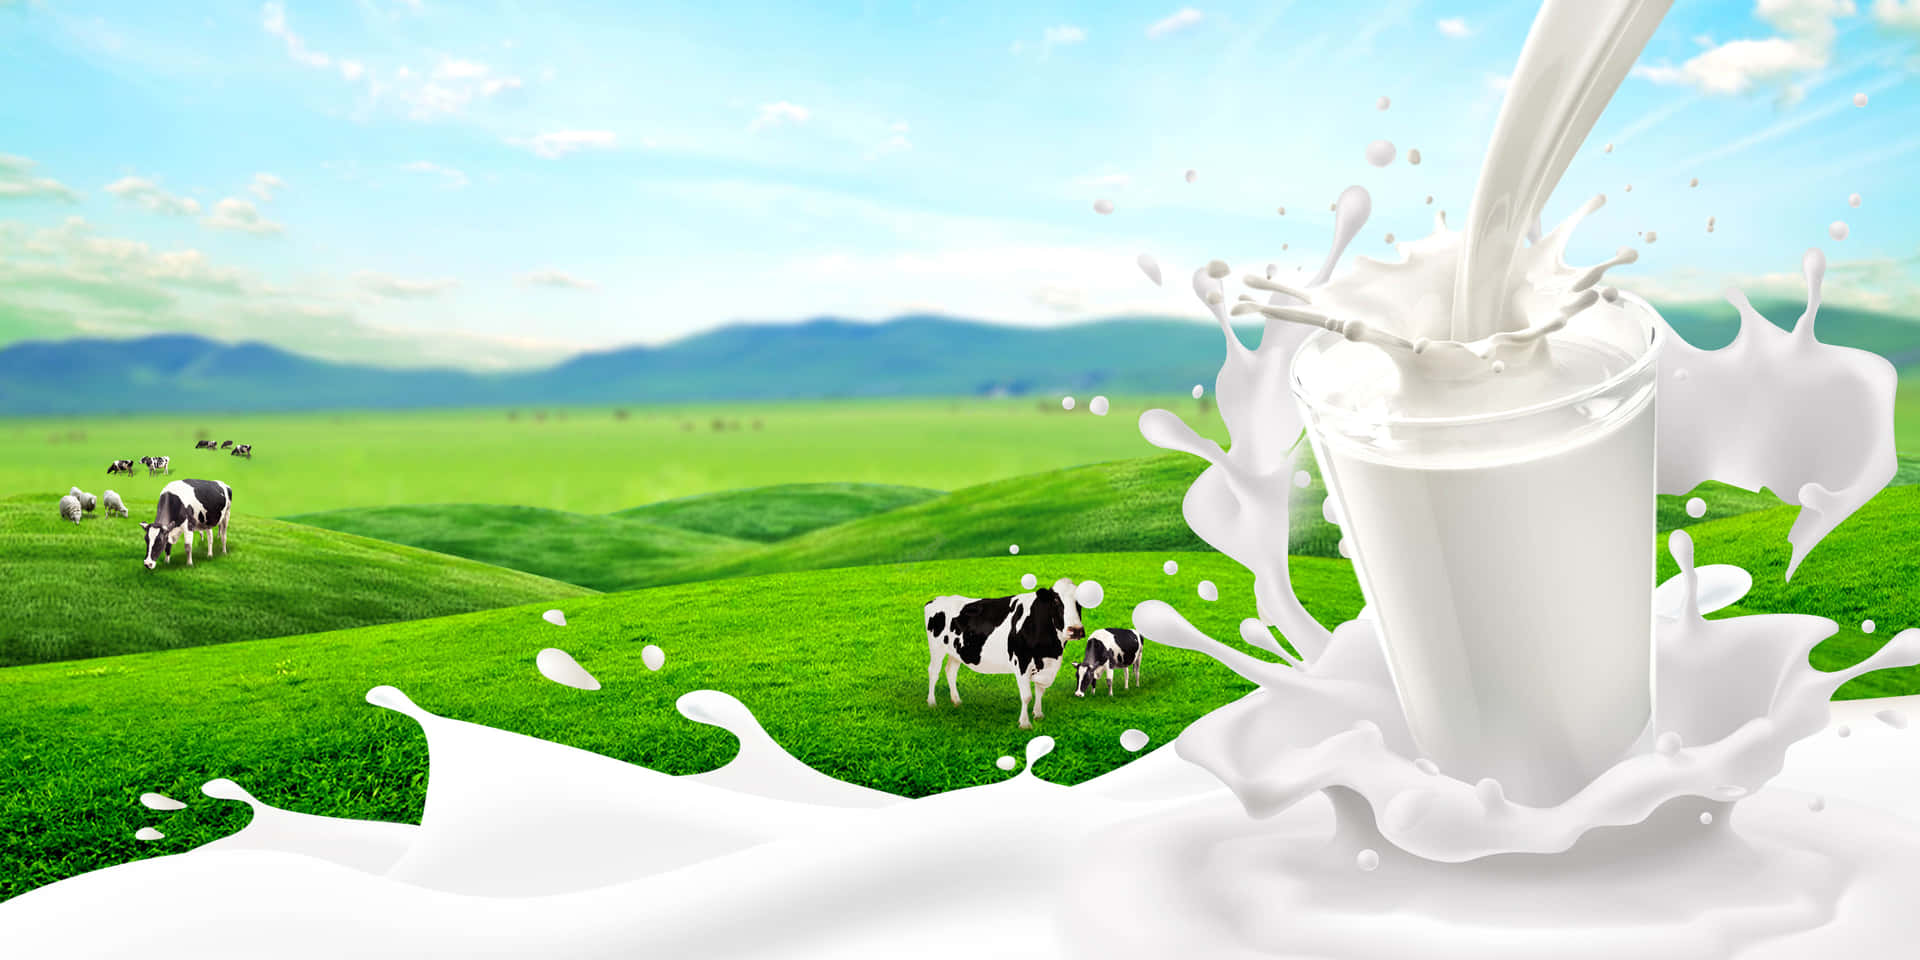 Milk Wallpaper Images - Free Download on Freepik